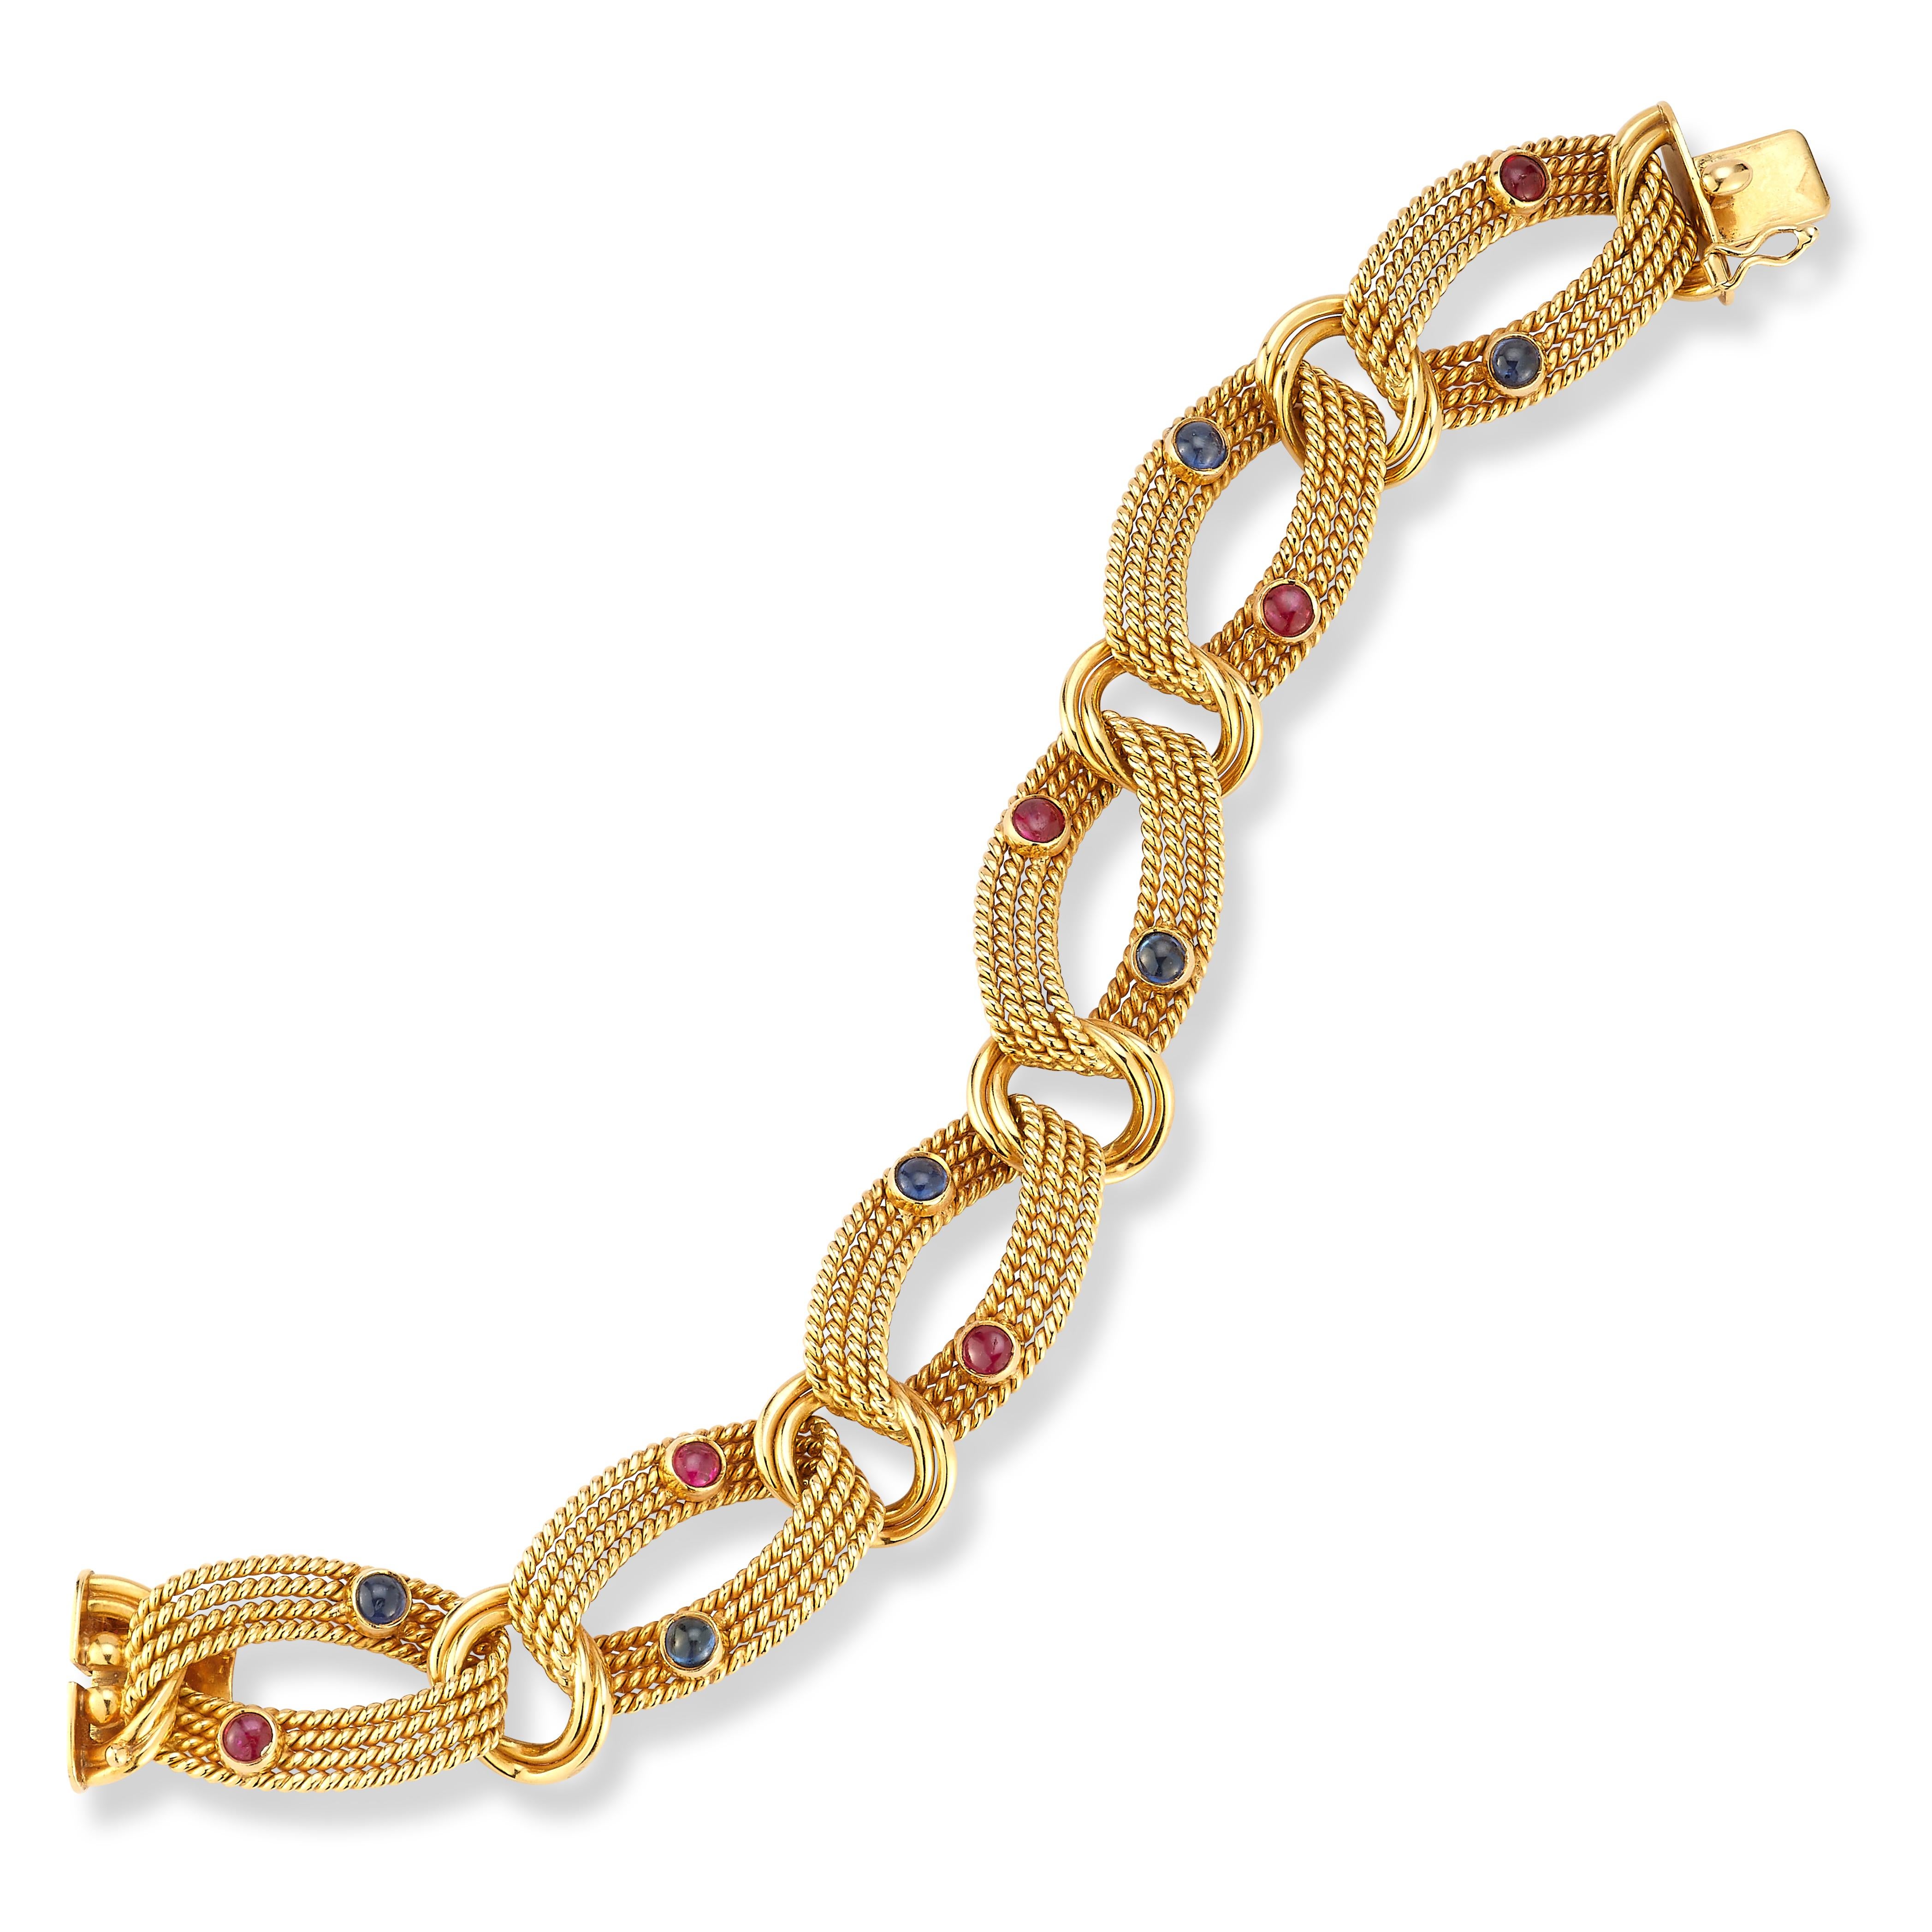 Tiffany & Co. Bracelet en or saphir et rubis

Bracelet en or jaune texturé 18 carats composé de 6 maillons à motif de corde, chacun serti d'un saphir cabochon et d'un rubis cabochon.

Dimensions : 7.5